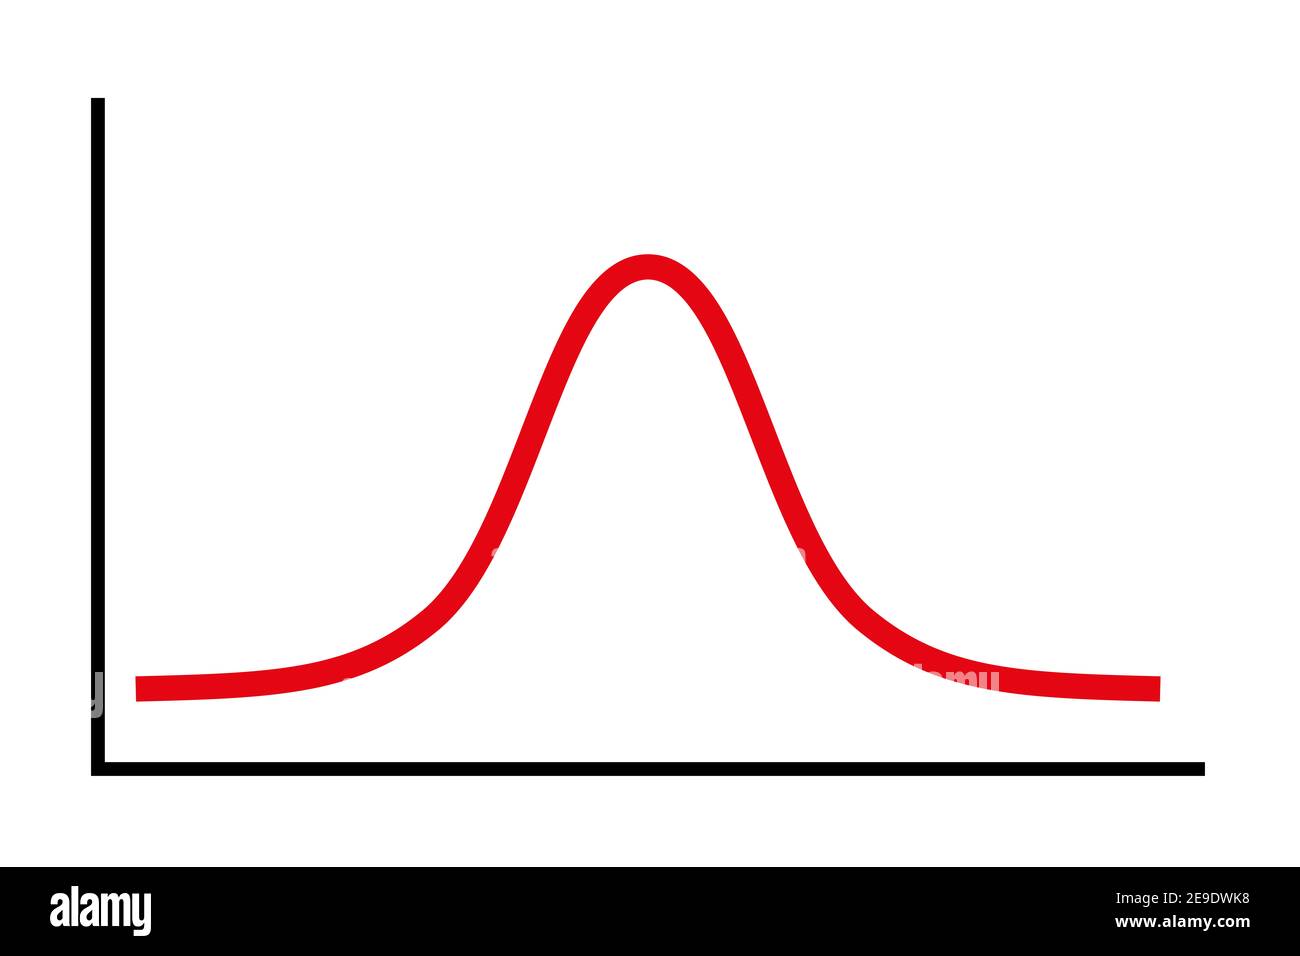 Simbolo della curva a campana, un diagramma semplificato per una distribuzione normale standard, chiamata anche distribuzione gaussiana, utilizzata nella teoria della probabilità. Foto Stock